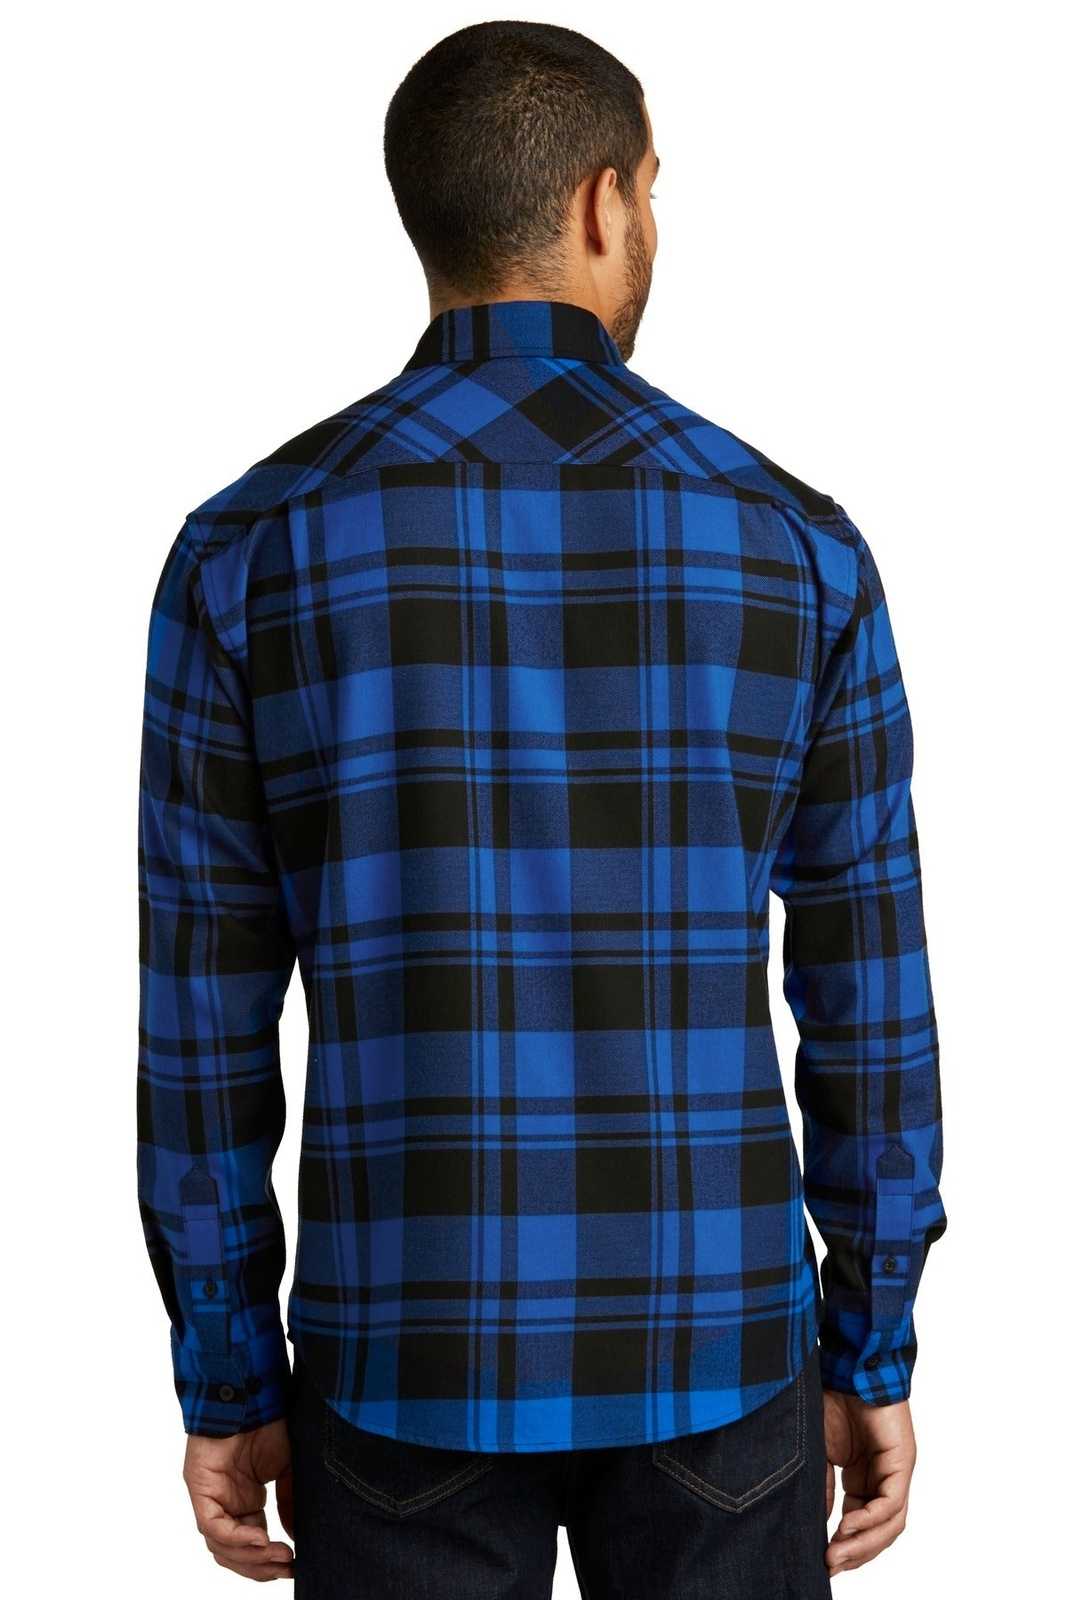 Port Authority W668 Plaid Flannel Shirt - Royal Black - HIT a Double - 2